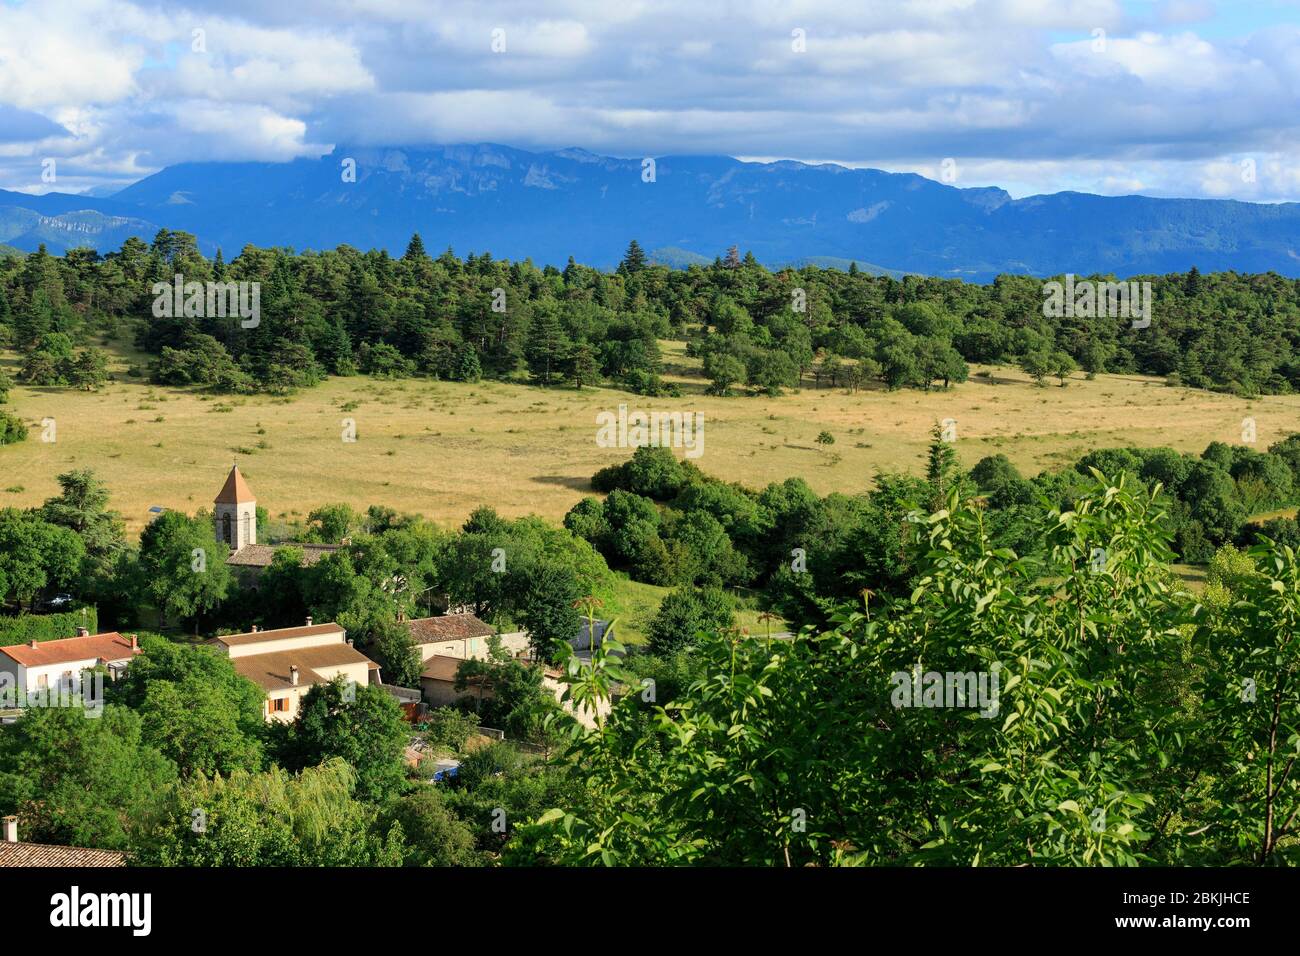 France, Drome, Vercors Regional Natural Park, Plan de Baix, Les Trois Becs in the background Stock Photo